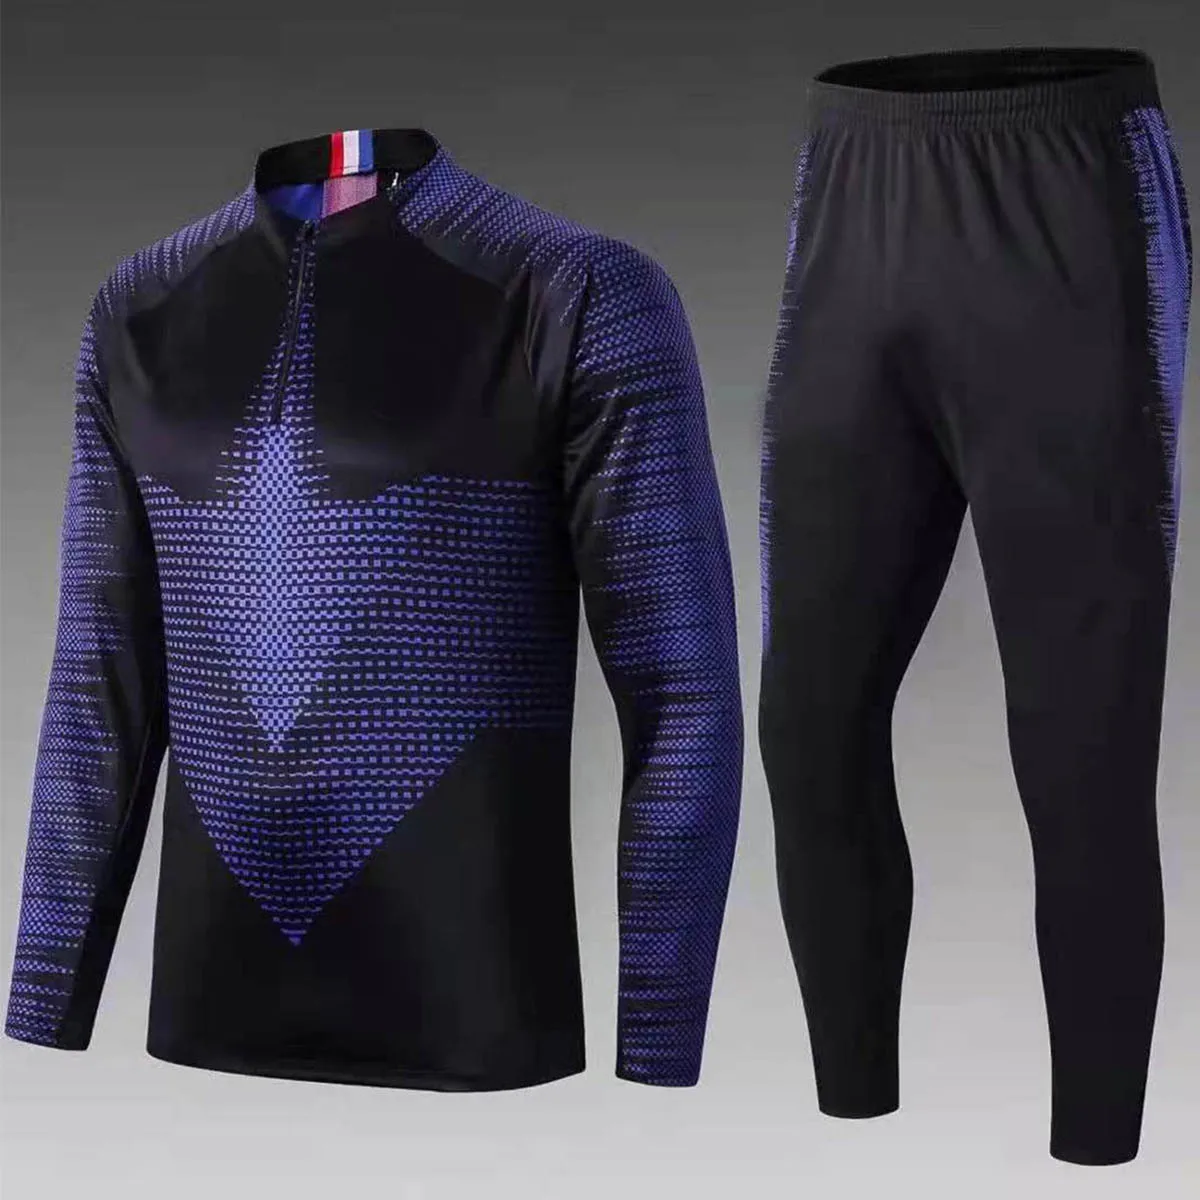 Мужской футбольный тренировочный костюм, куртка, Футбольная форма тренировочная рубашка, спортивные штаны, форма для бега, пиджак по индивидуальному заказу